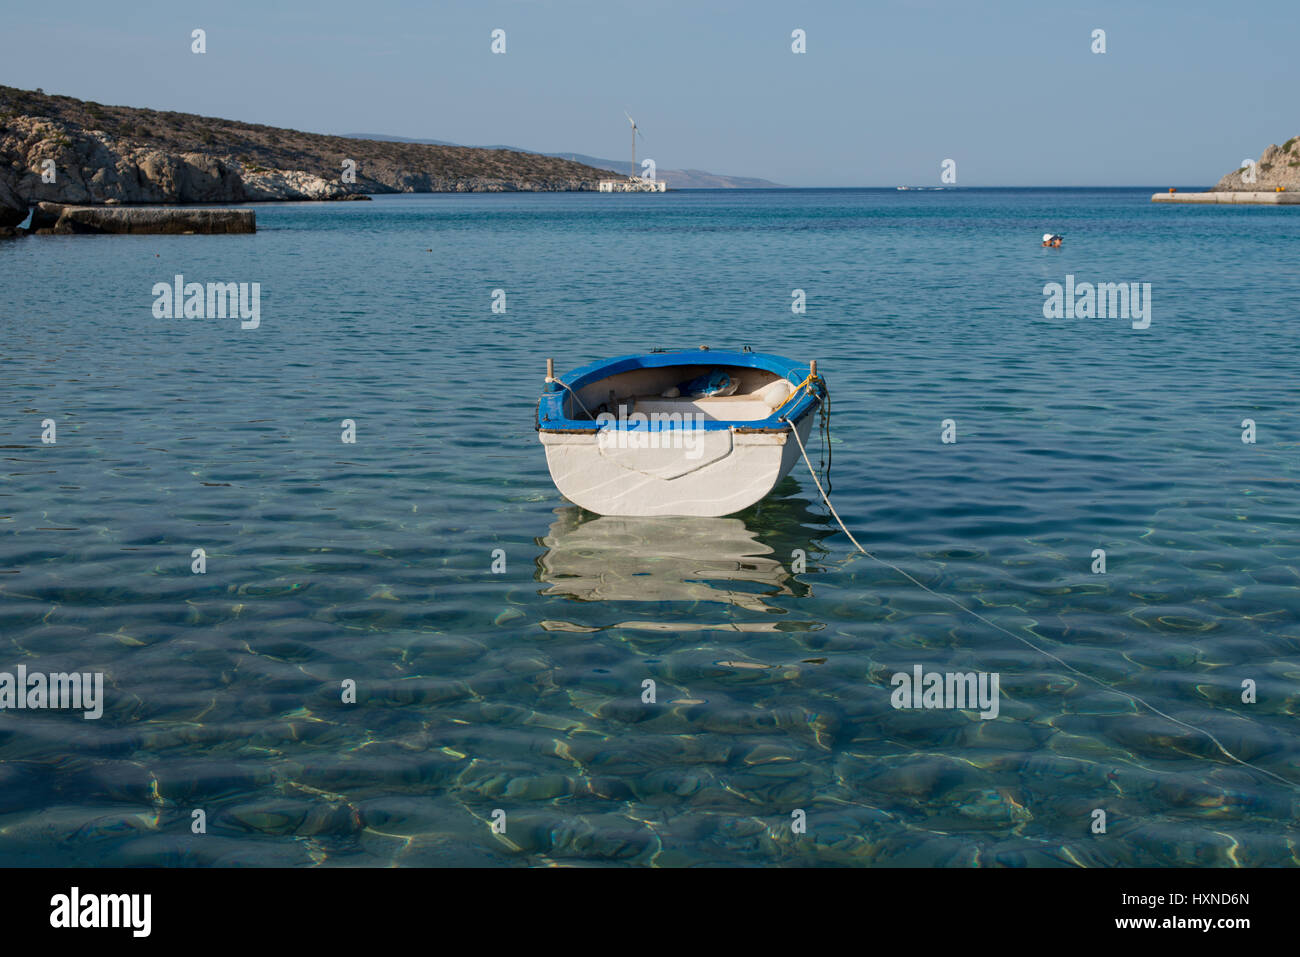 Weiß-blaues kleines Boot vor Agios Georgios gldenen im Nachmittagslicht, Iraklia Insel, kleine Kykladen, Griechenland Foto Stock